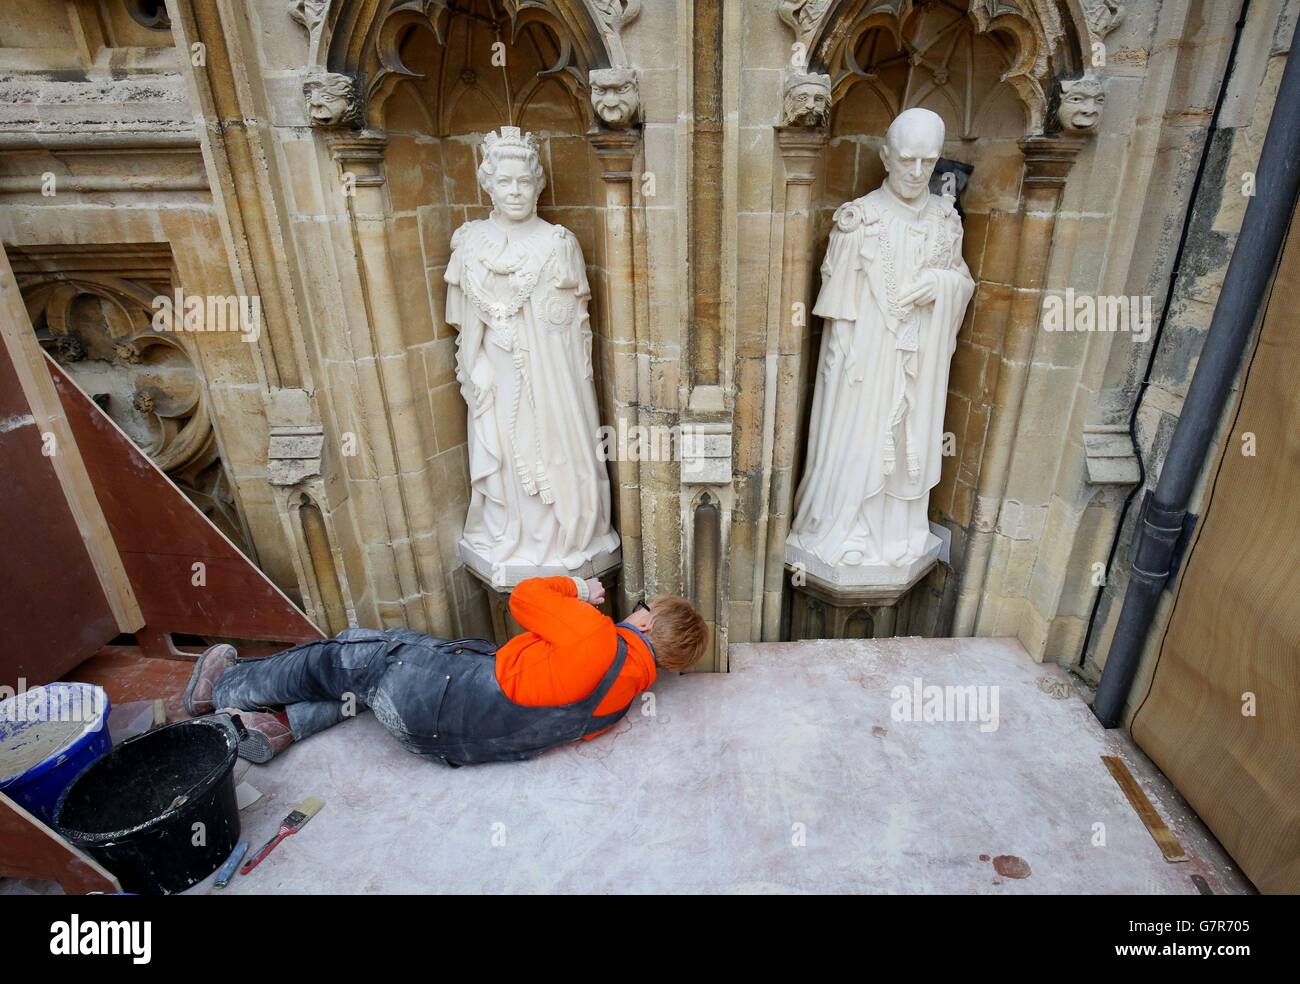 Lo scultore architettonico Nina Bilbey mette il tocco finale alle sue statue della Regina Elisabetta II e del Duca di Edimburgo alla Cattedrale di Canterbury in Kent a come segno del giubileo dei diamanti della Regina. Foto Stock